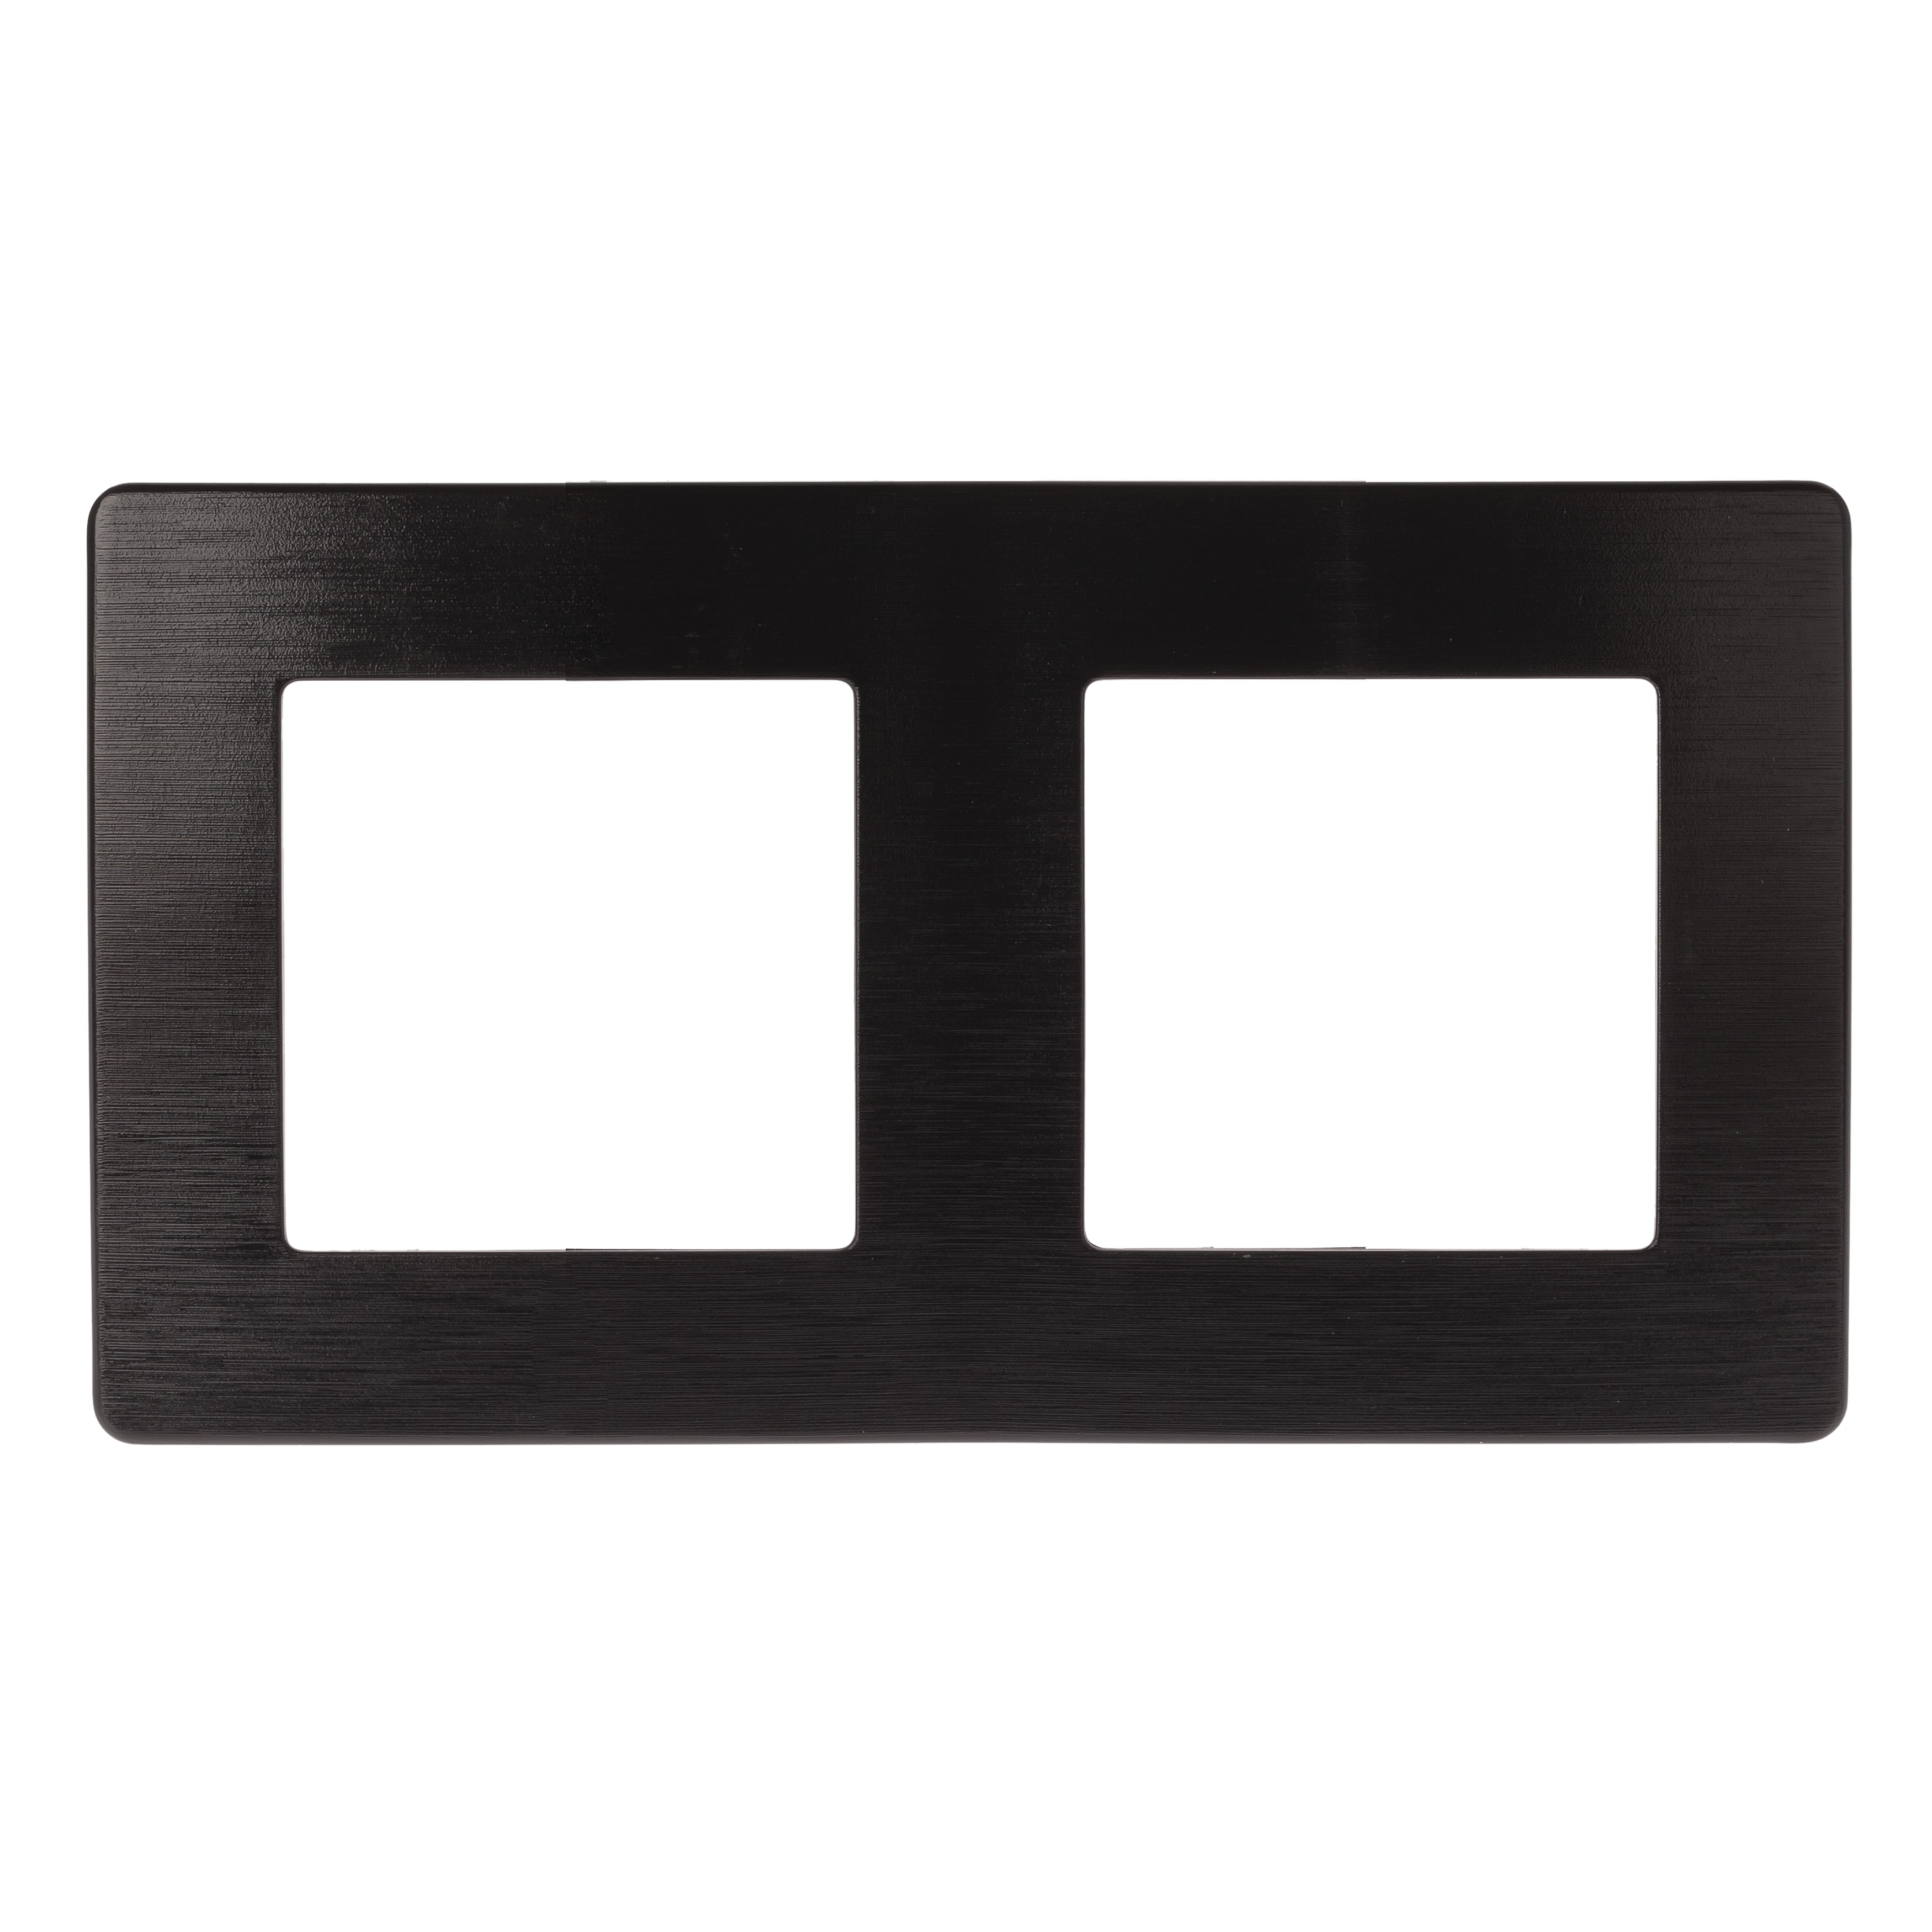 Рамка для розеток и выключателей ЭРА Серия 12 12-5102-06 на 2 поста, Сатин, чёрный